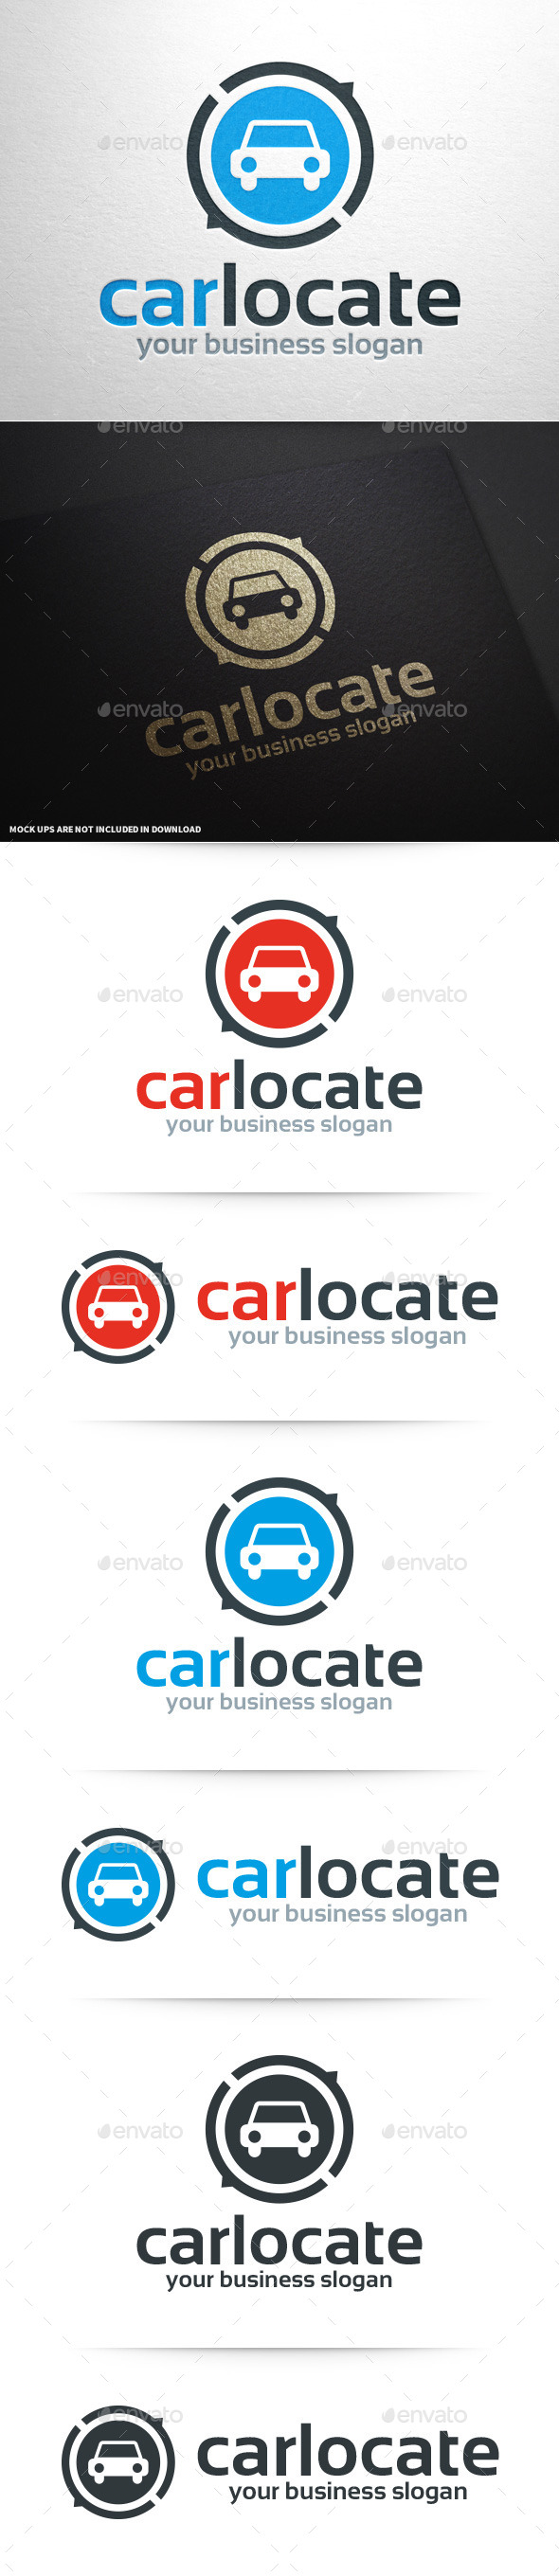 Car Locate Logo Template